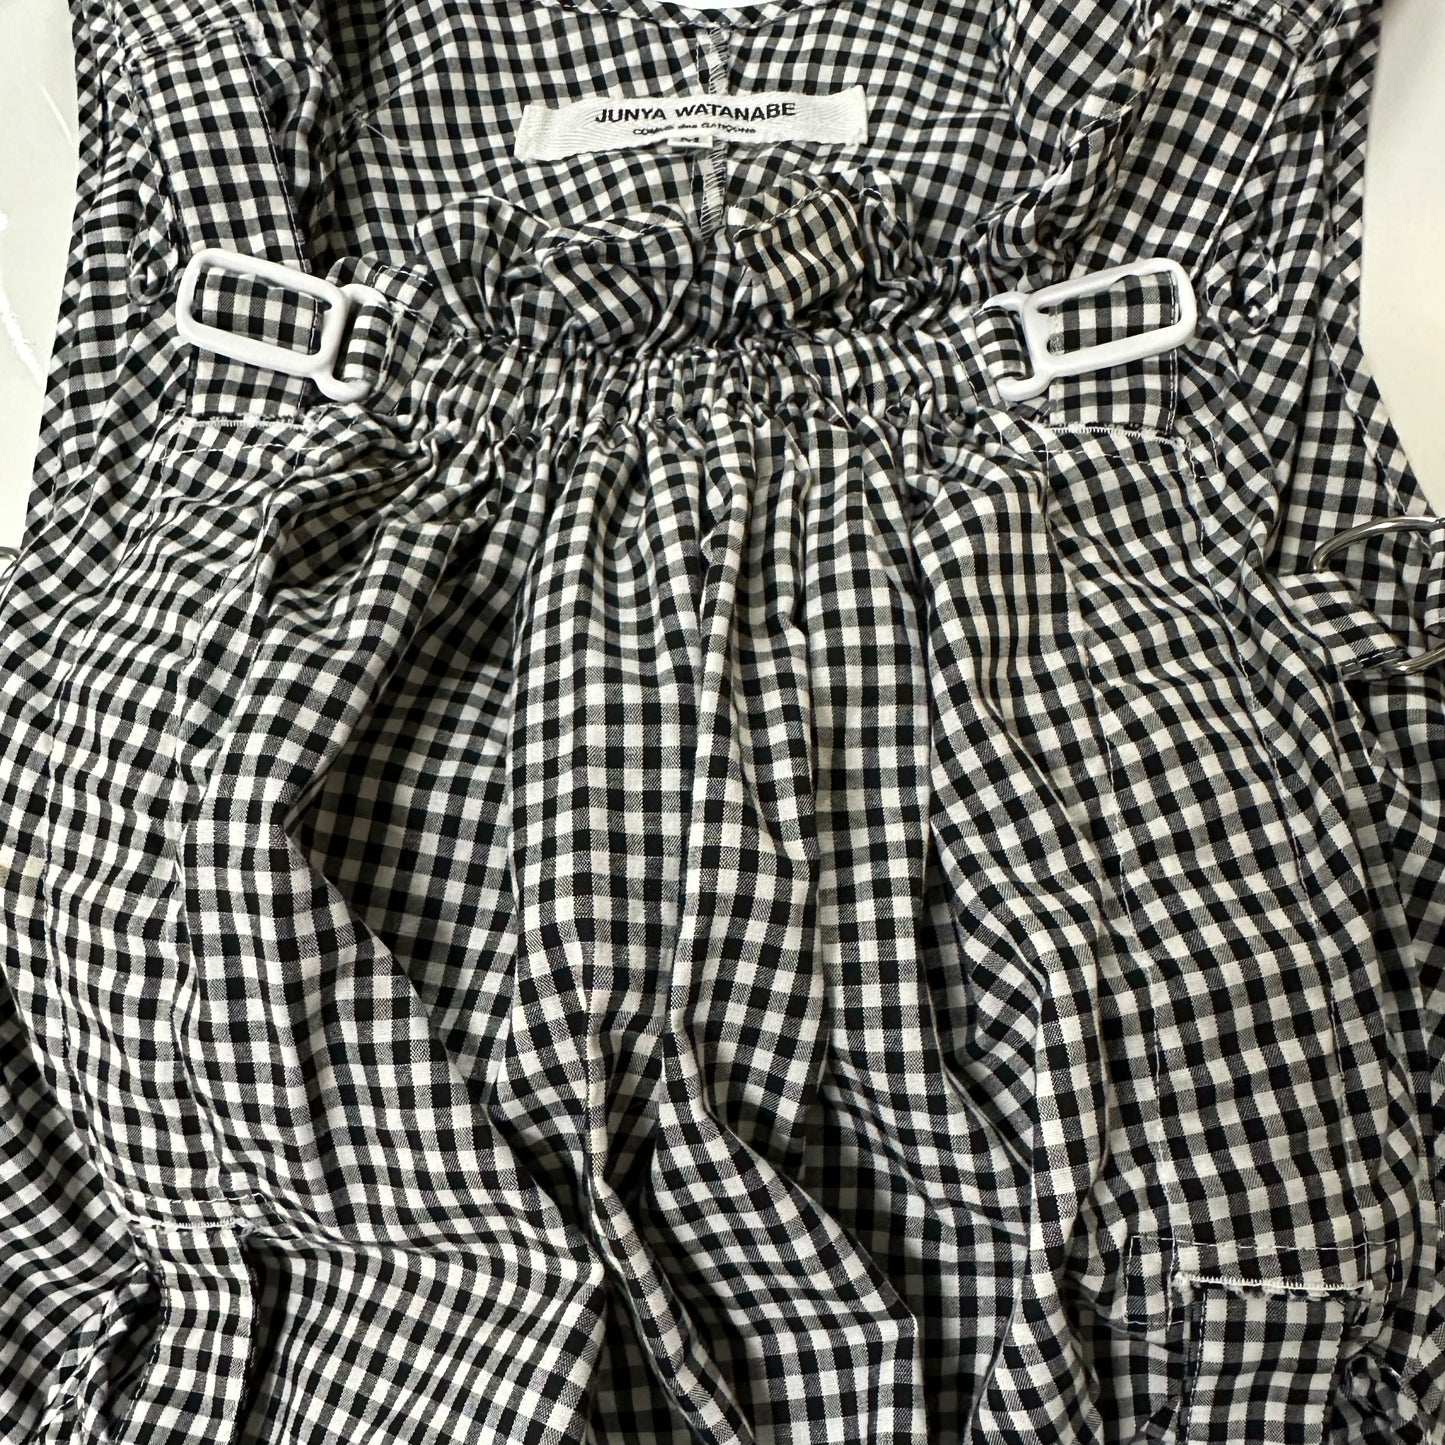 JUNYA WATANABE Supring Summer 2003 Checkered Print Parachute Top